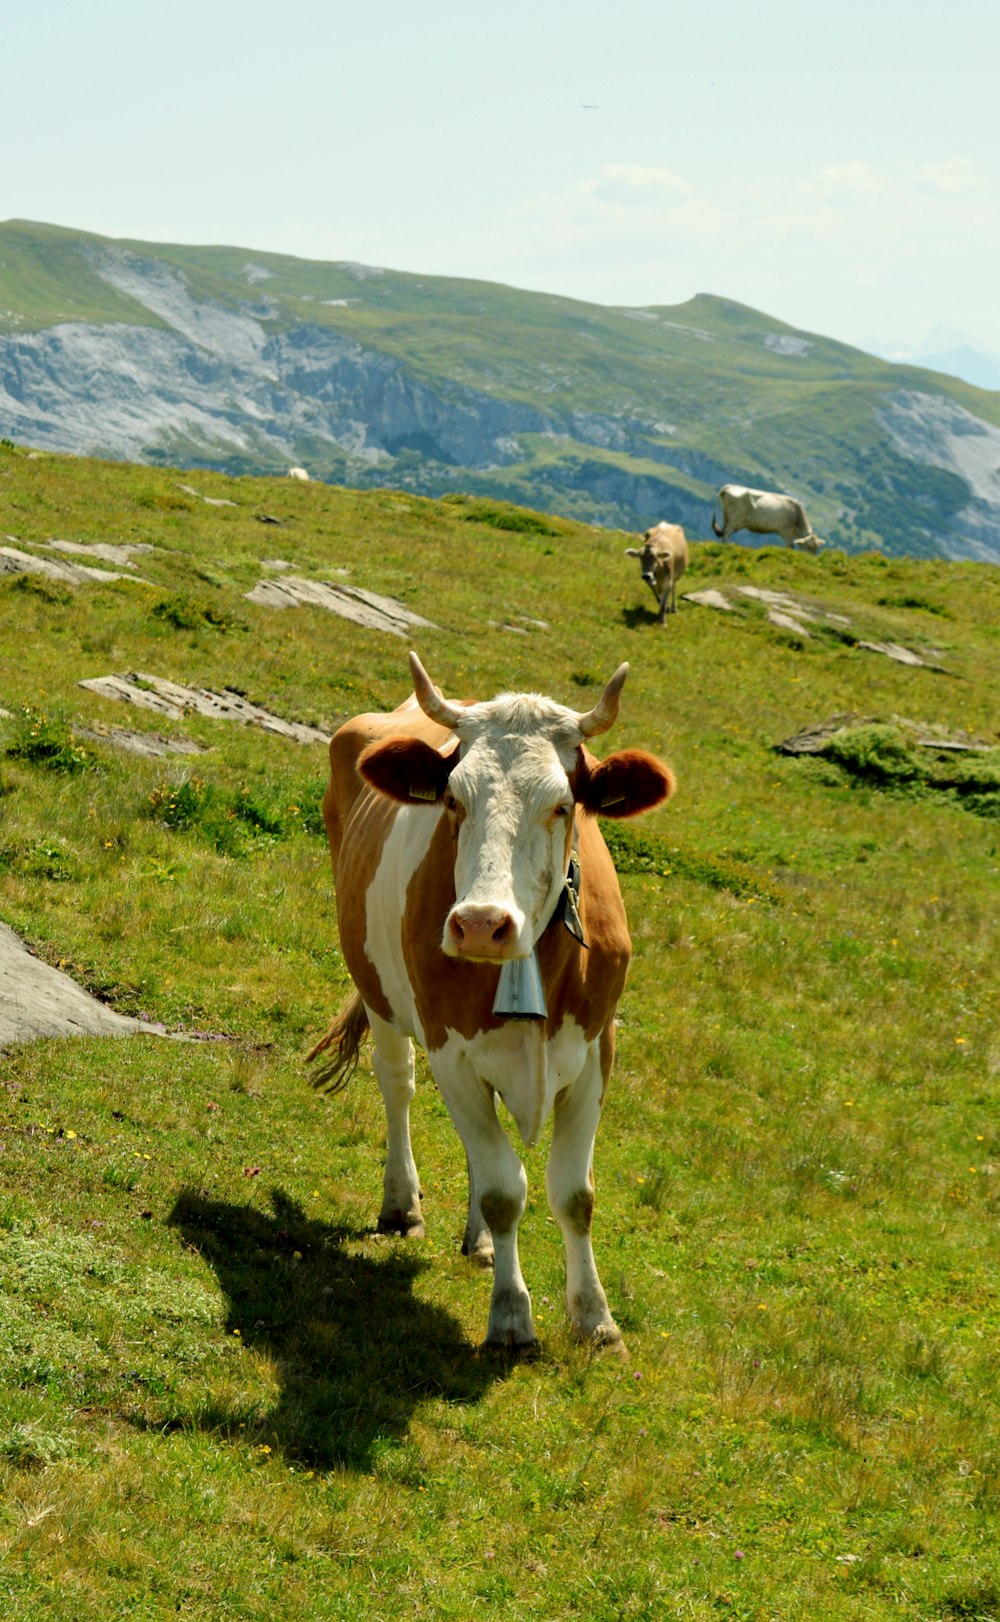 Braune und weiße Kuh auf grünem Grasfeld tagsüber